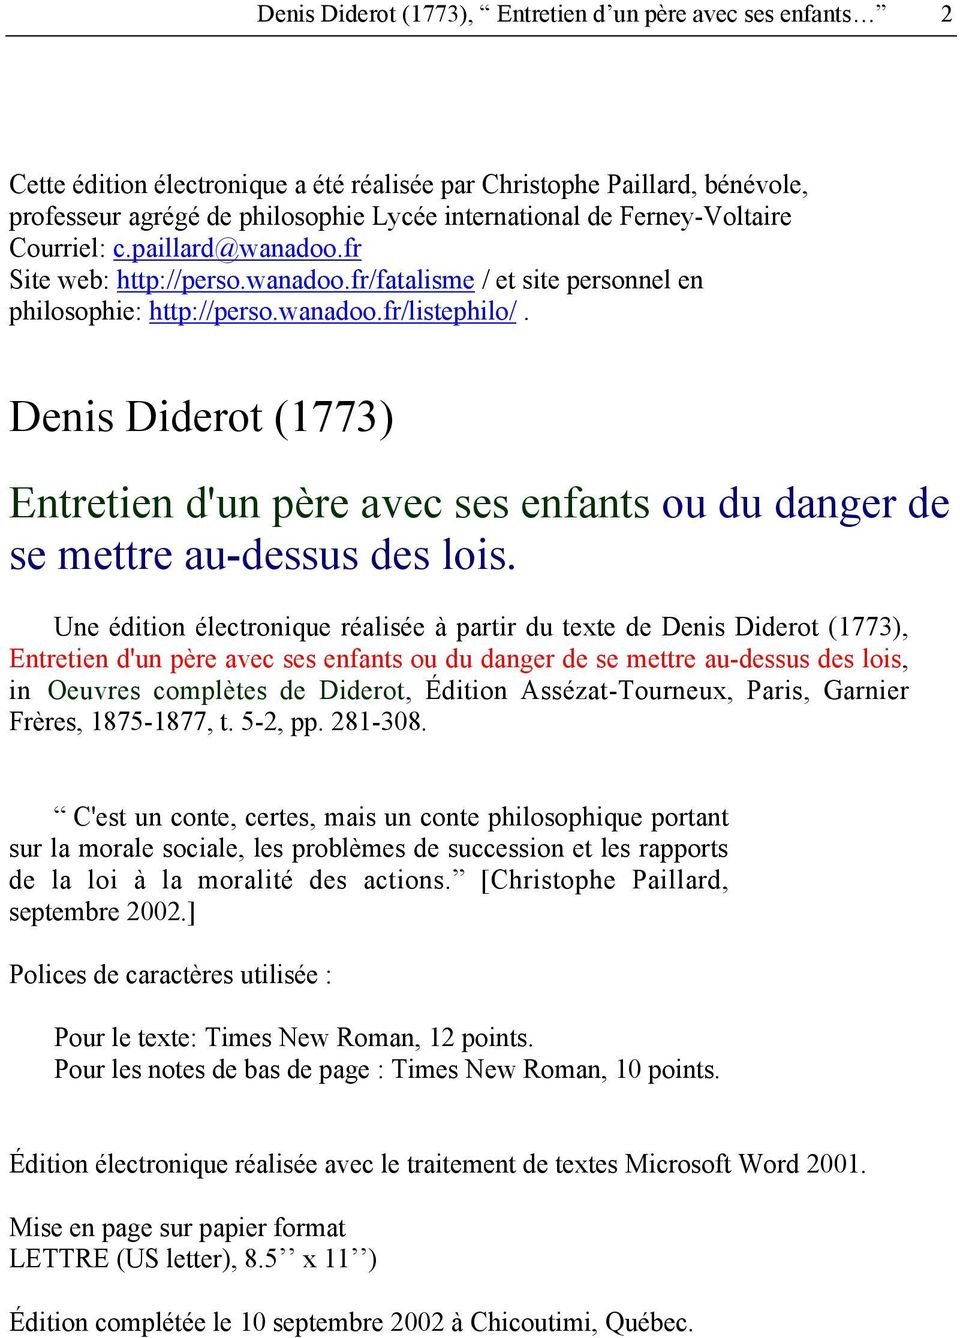 Denis Diderot (1773) Entretien d'un père avec ses enfants ou du danger de se mettre au-dessus des lois.